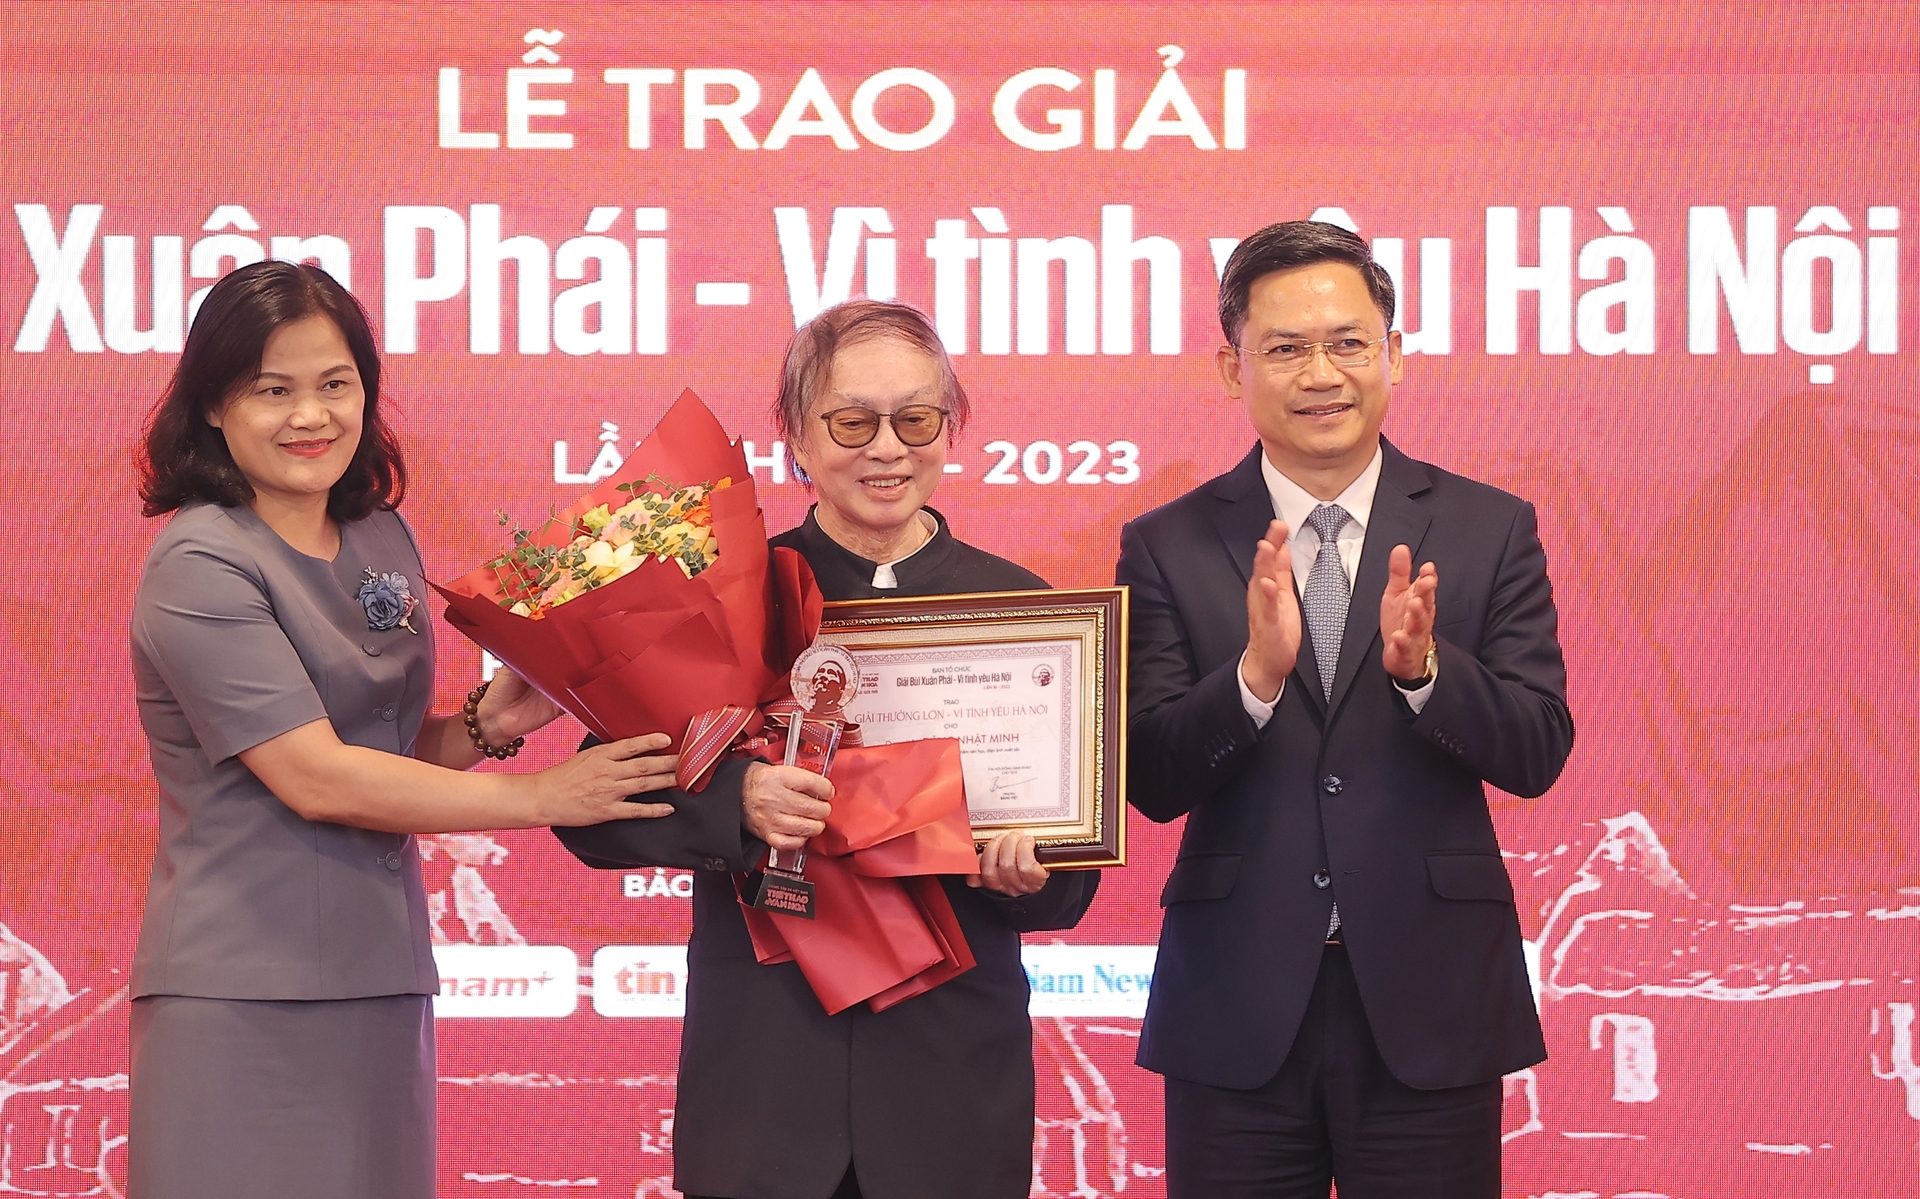 Đạo diễn Đặng Nhật Minh nhận Giải thưởng Lớn - Vì tình yêu Hà Nội. Ảnh: Hòa Nguyễn.